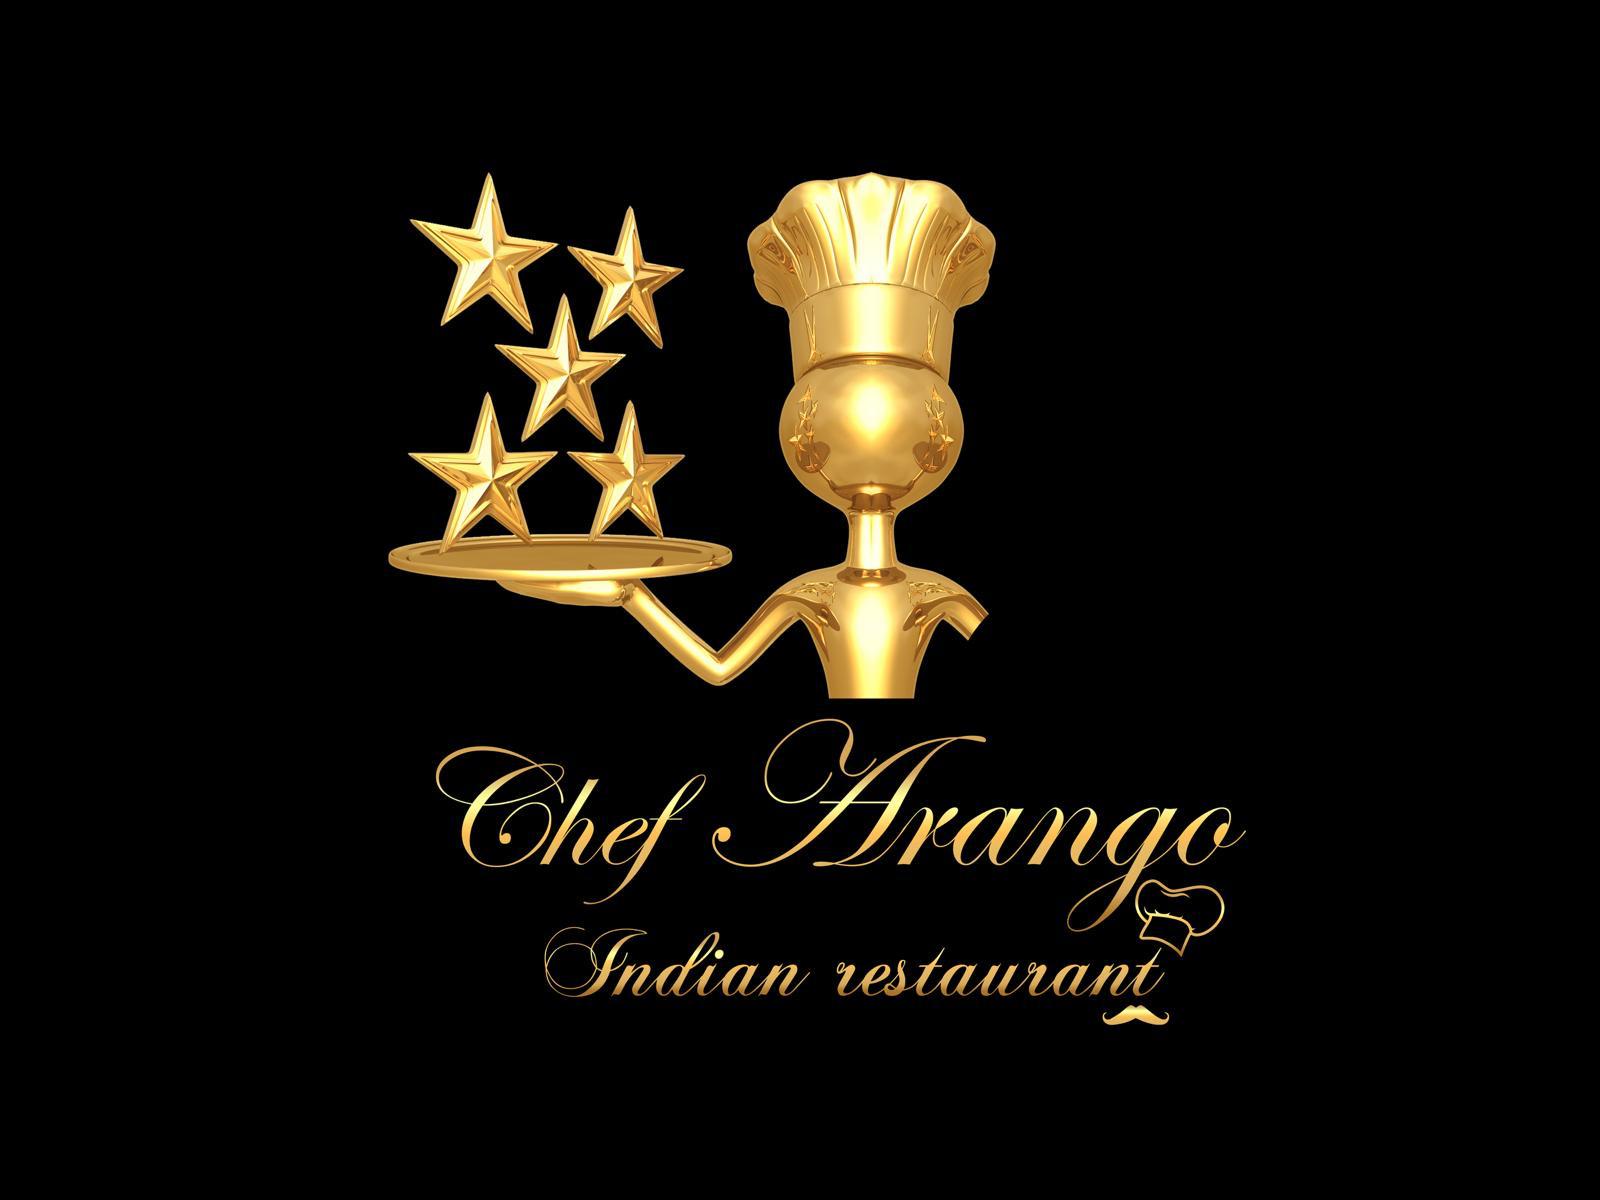 Chef Arango Indian Restaurant  Logo